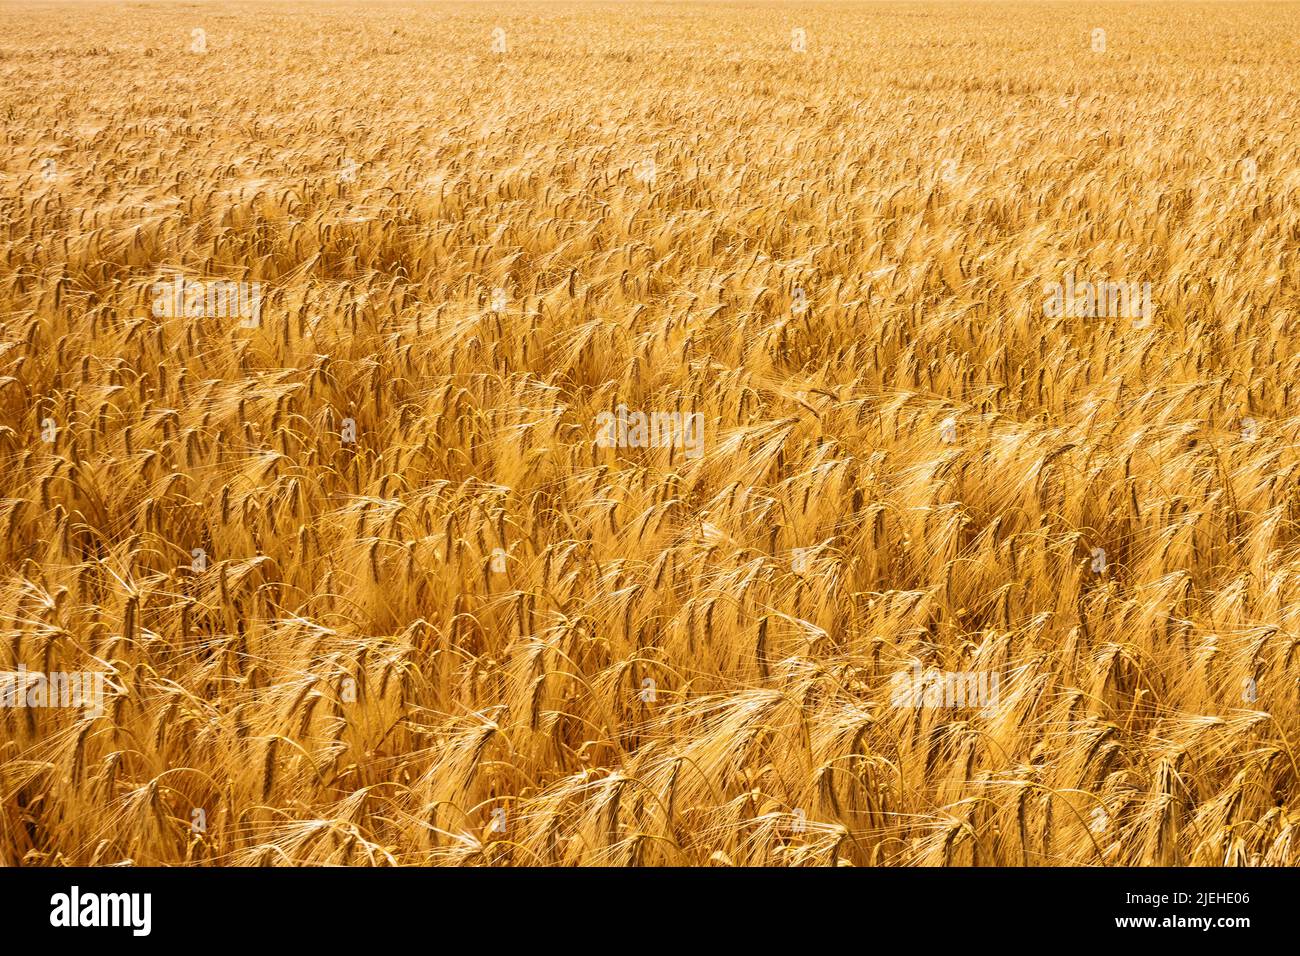 Eine Getreide Ähre auf einem Getreidefeld. Gerste in der Landwirtschaft vor der Ernte, Bayern, Deutschland, Kurz vor der Ernte, Foto Stock